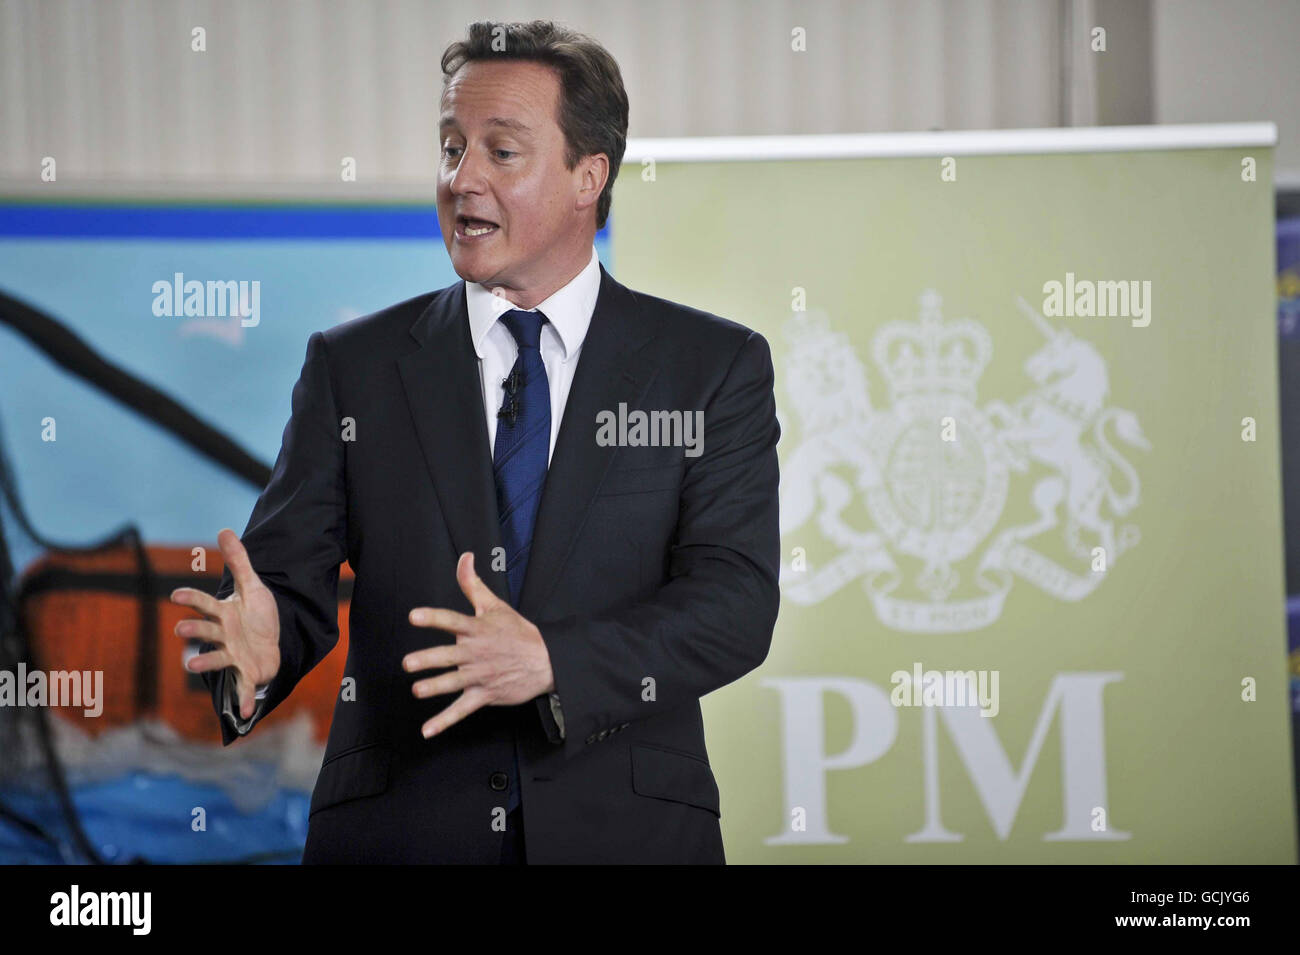 Premierminister David Cameron veranstaltet eine Fragerunde mit direkten Fragen und ANTWORTEN des Premierministers an der Trenance Infant School in Newquay. Stockfoto